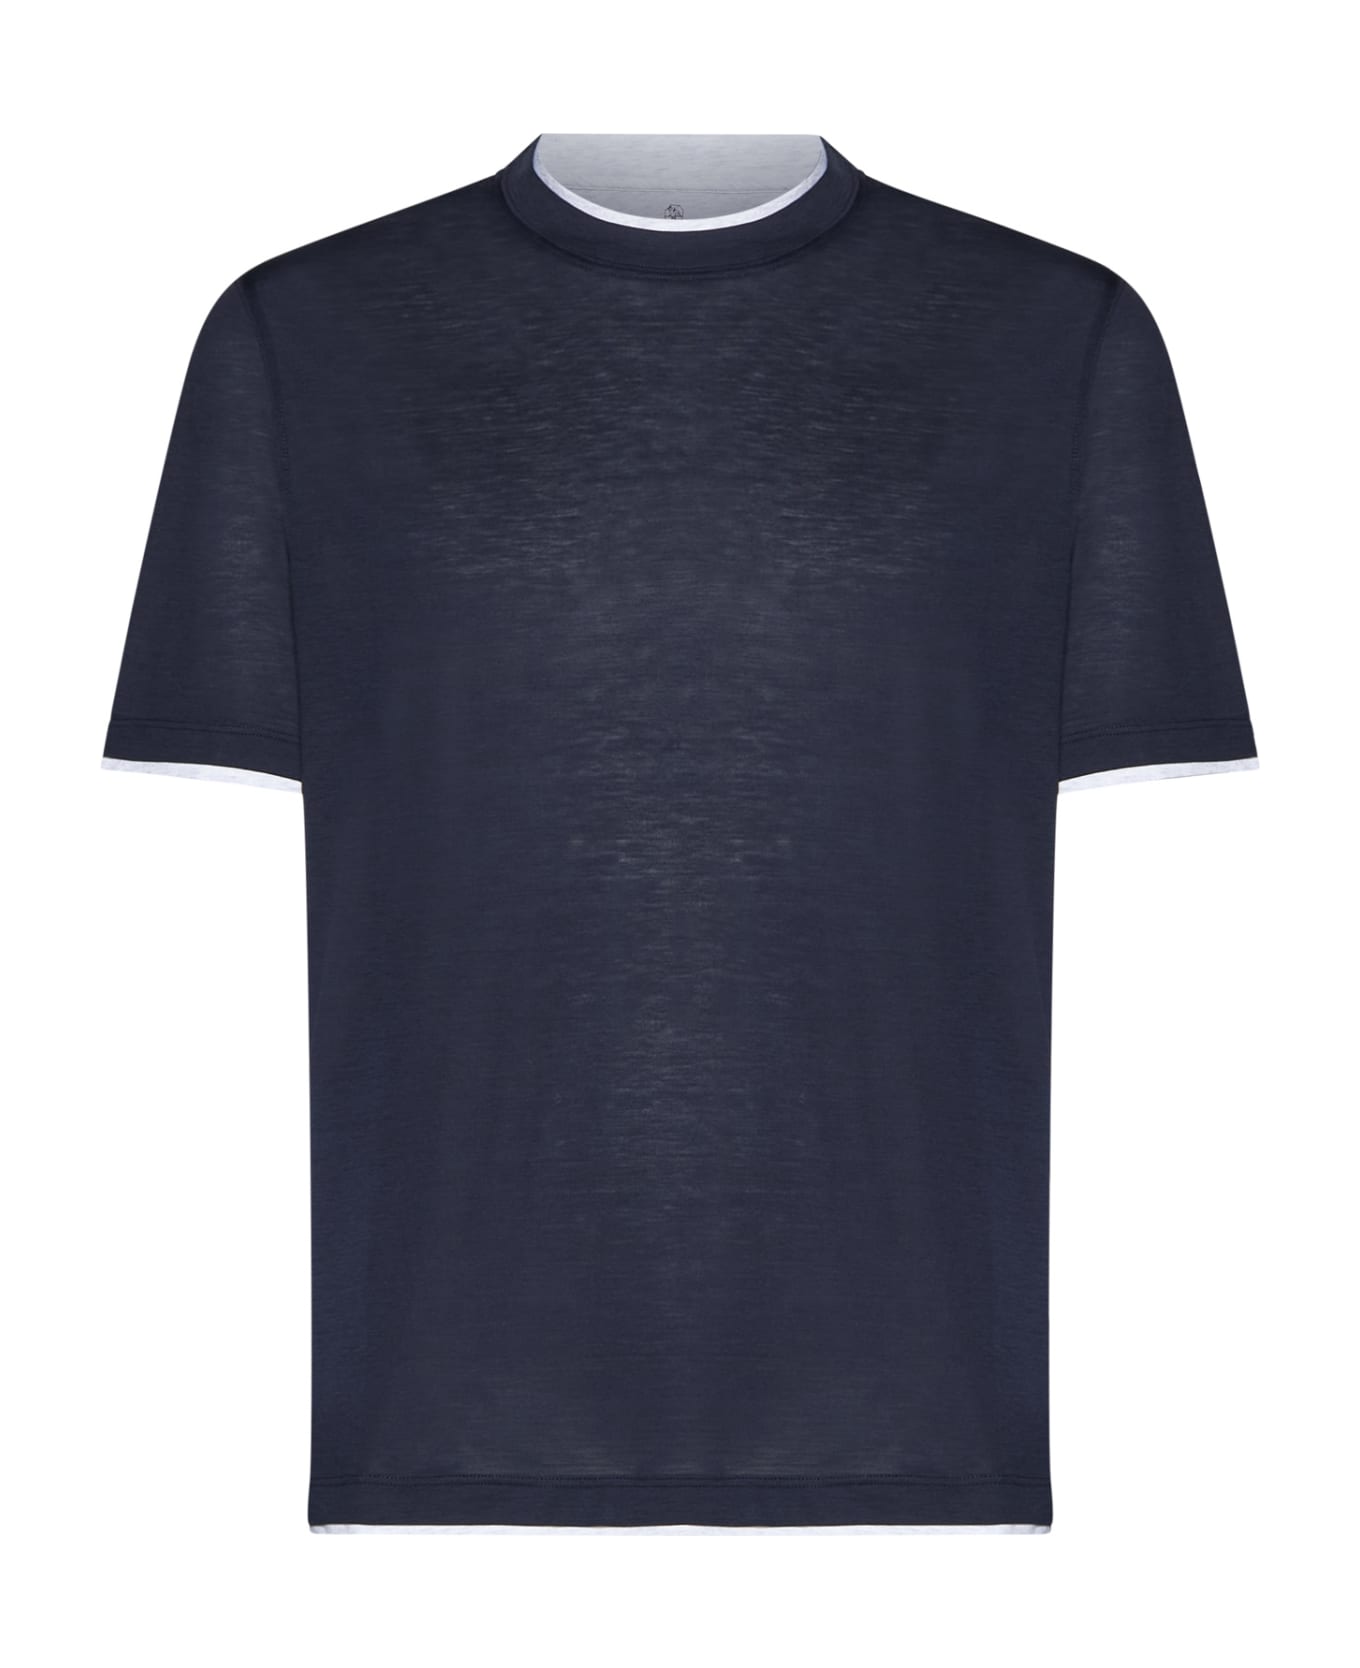 Brunello Cucinelli T-shirt - Cobalto シャツ